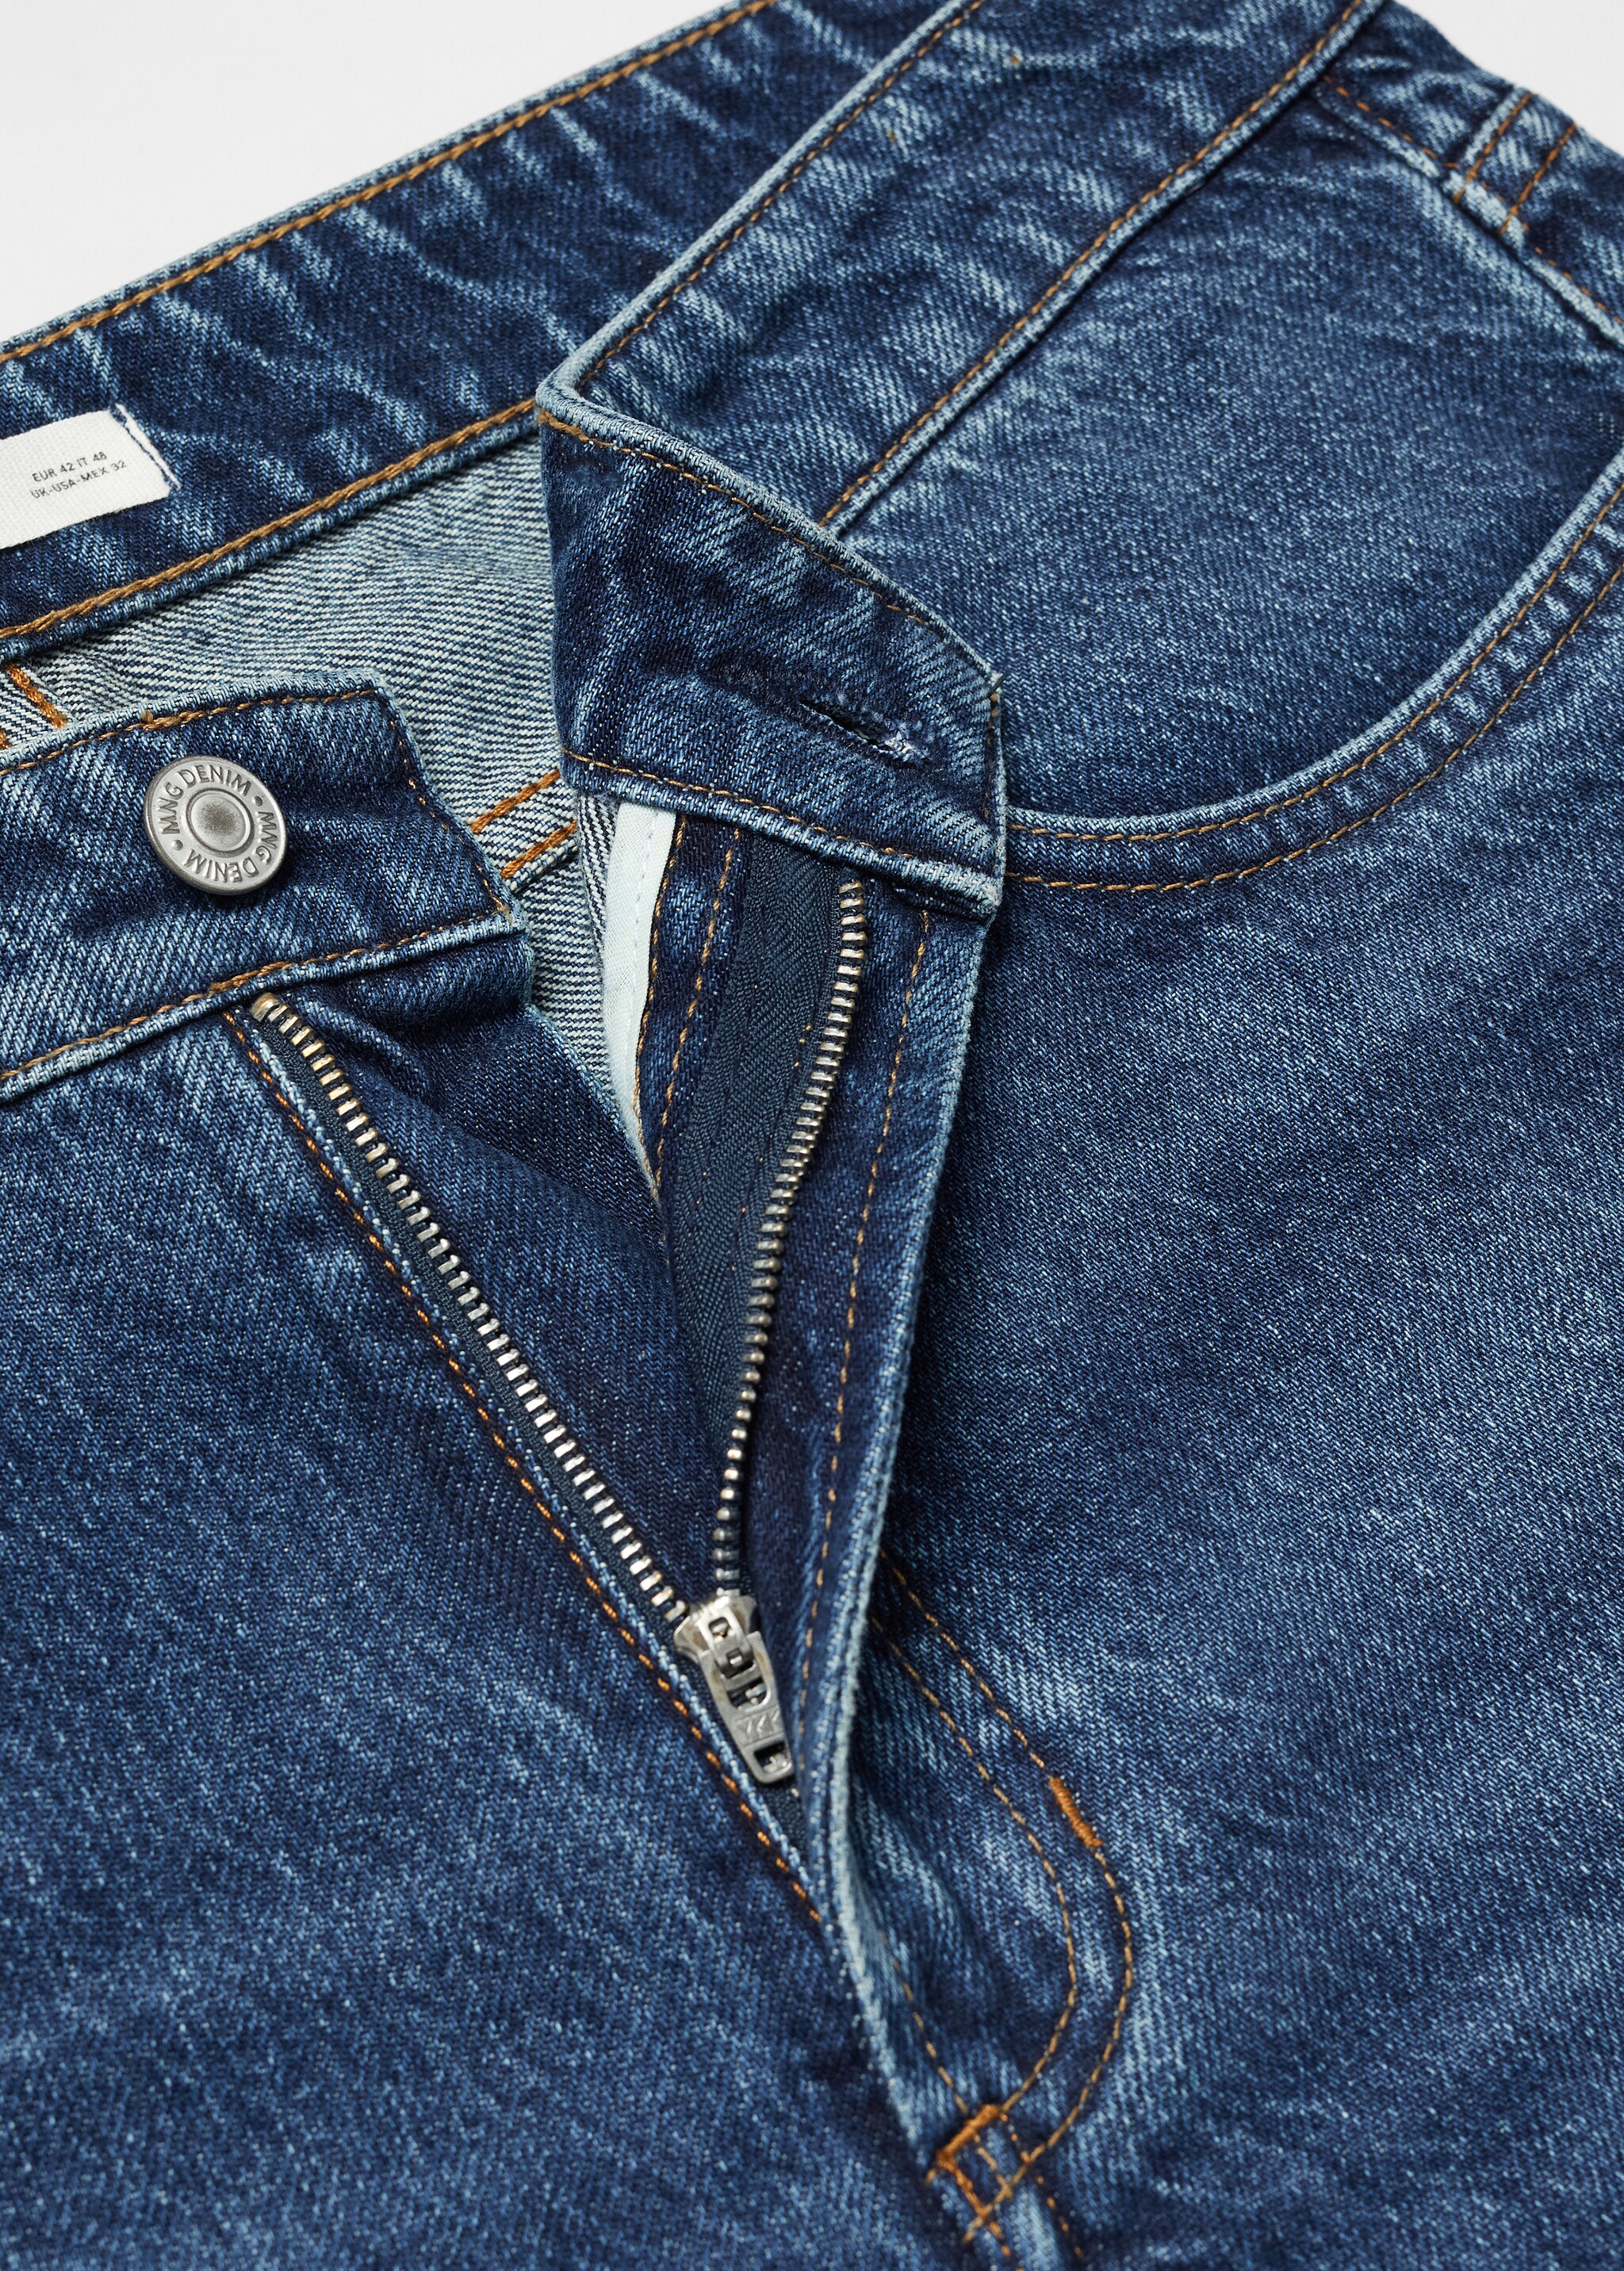 Jeansy o zwężanym kroju z ciemnym spraniem - Szczegóły artykułu 8